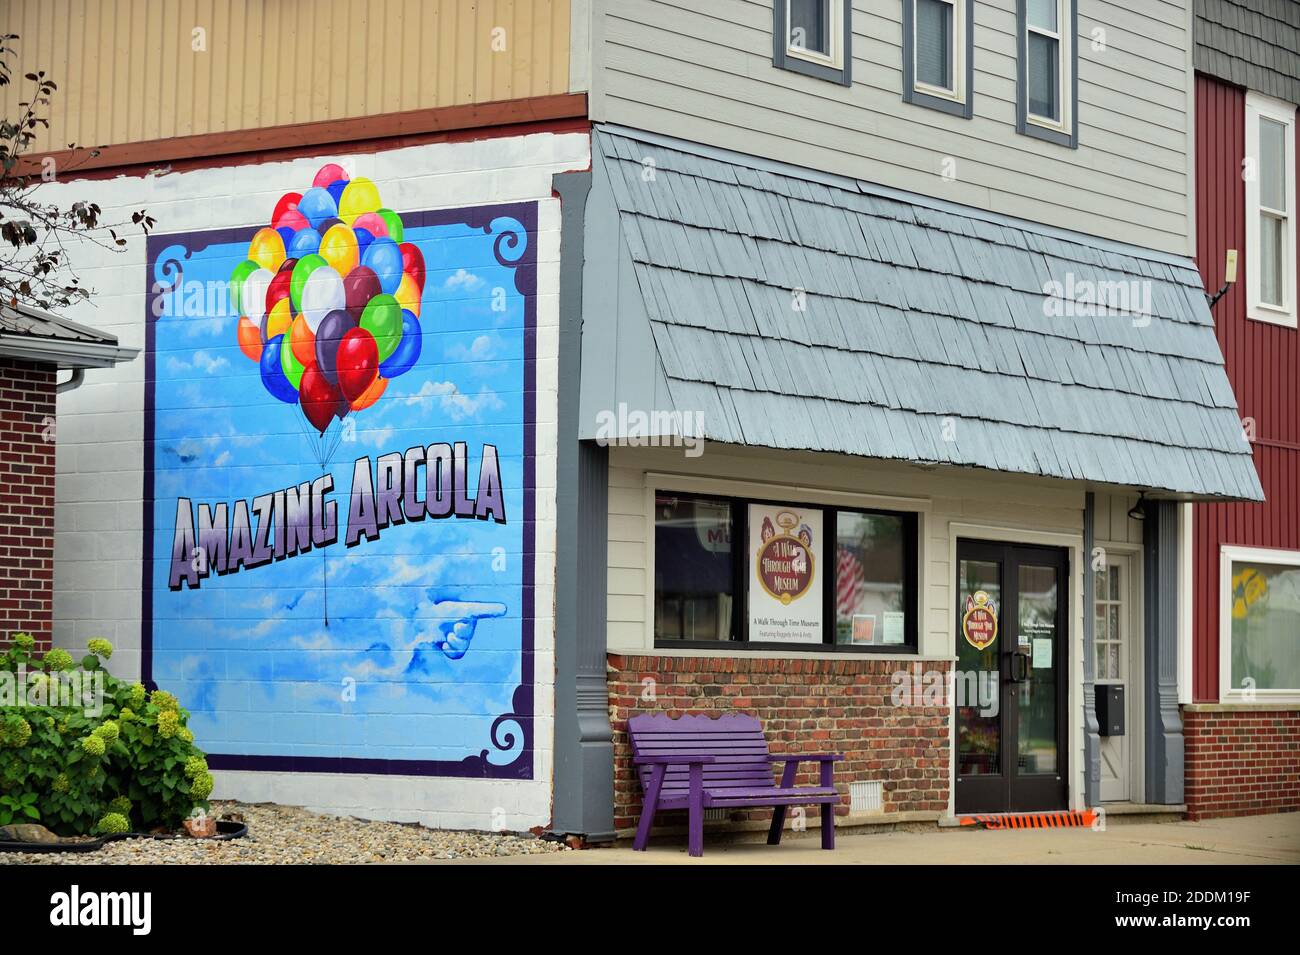 Arcola, Illinois, États-Unis. Un petit musée de ville avec un mur latéral orné d'une fresque murale colorée qui annonce l'attrait de la communauté. Banque D'Images